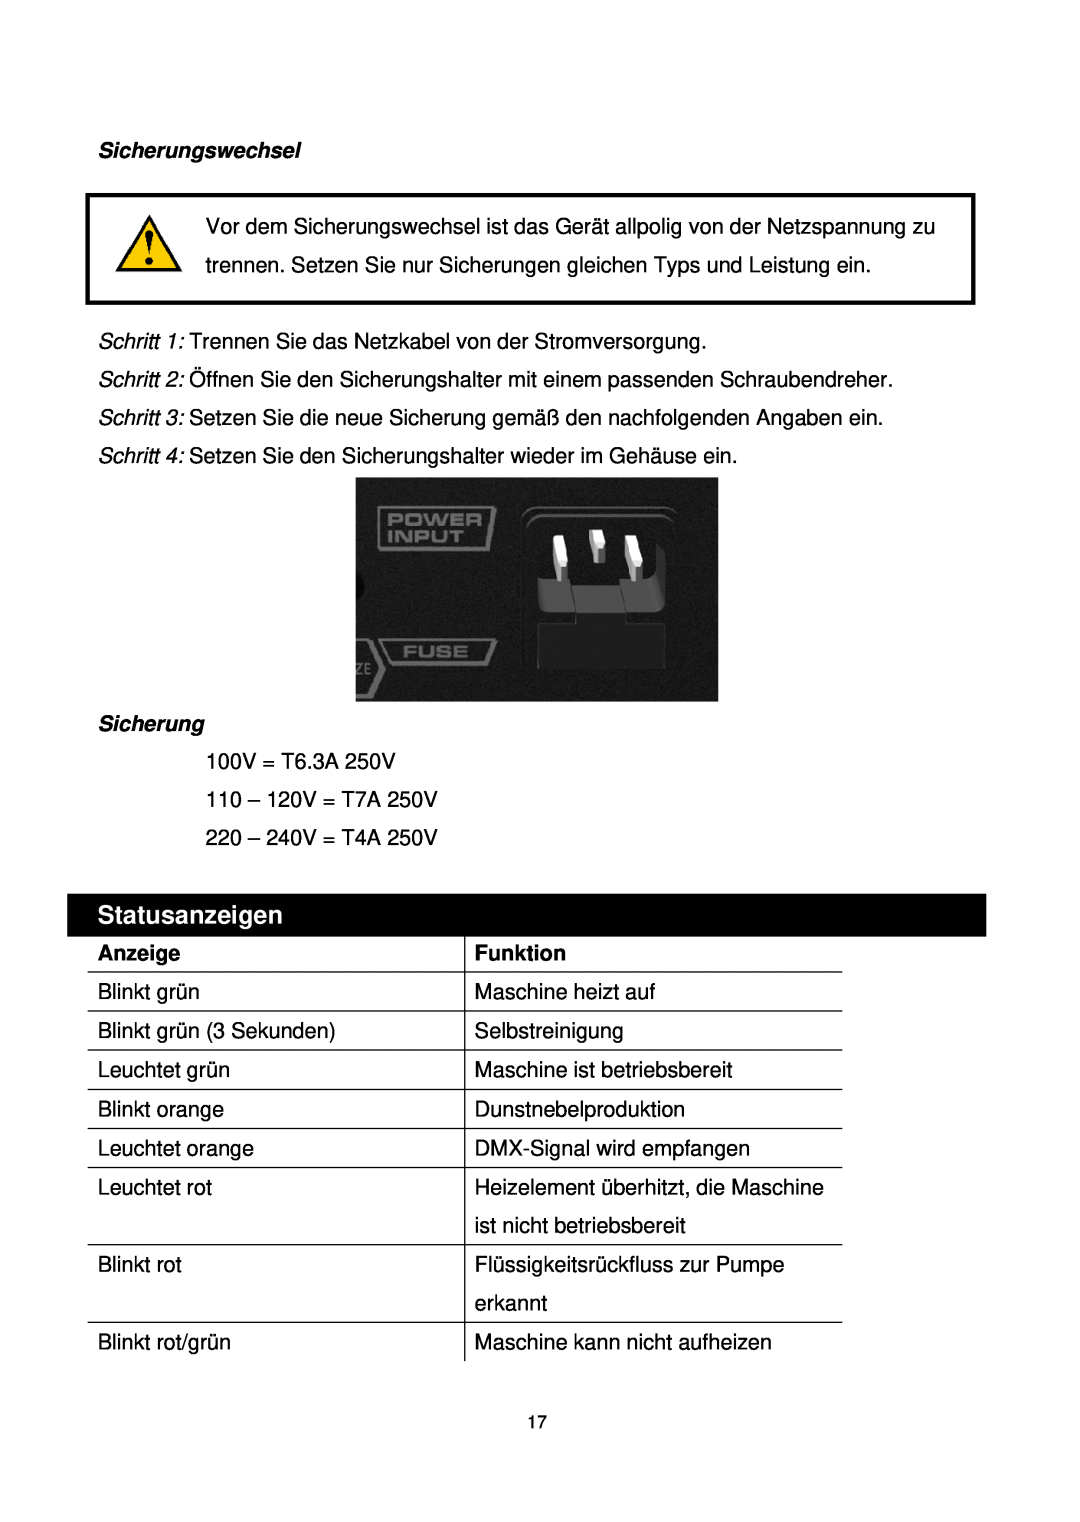 Antari Lighting and Effects Z-350 user manual Statusanzeigen, Sicherungswechsel, Anzeige, Funktion 